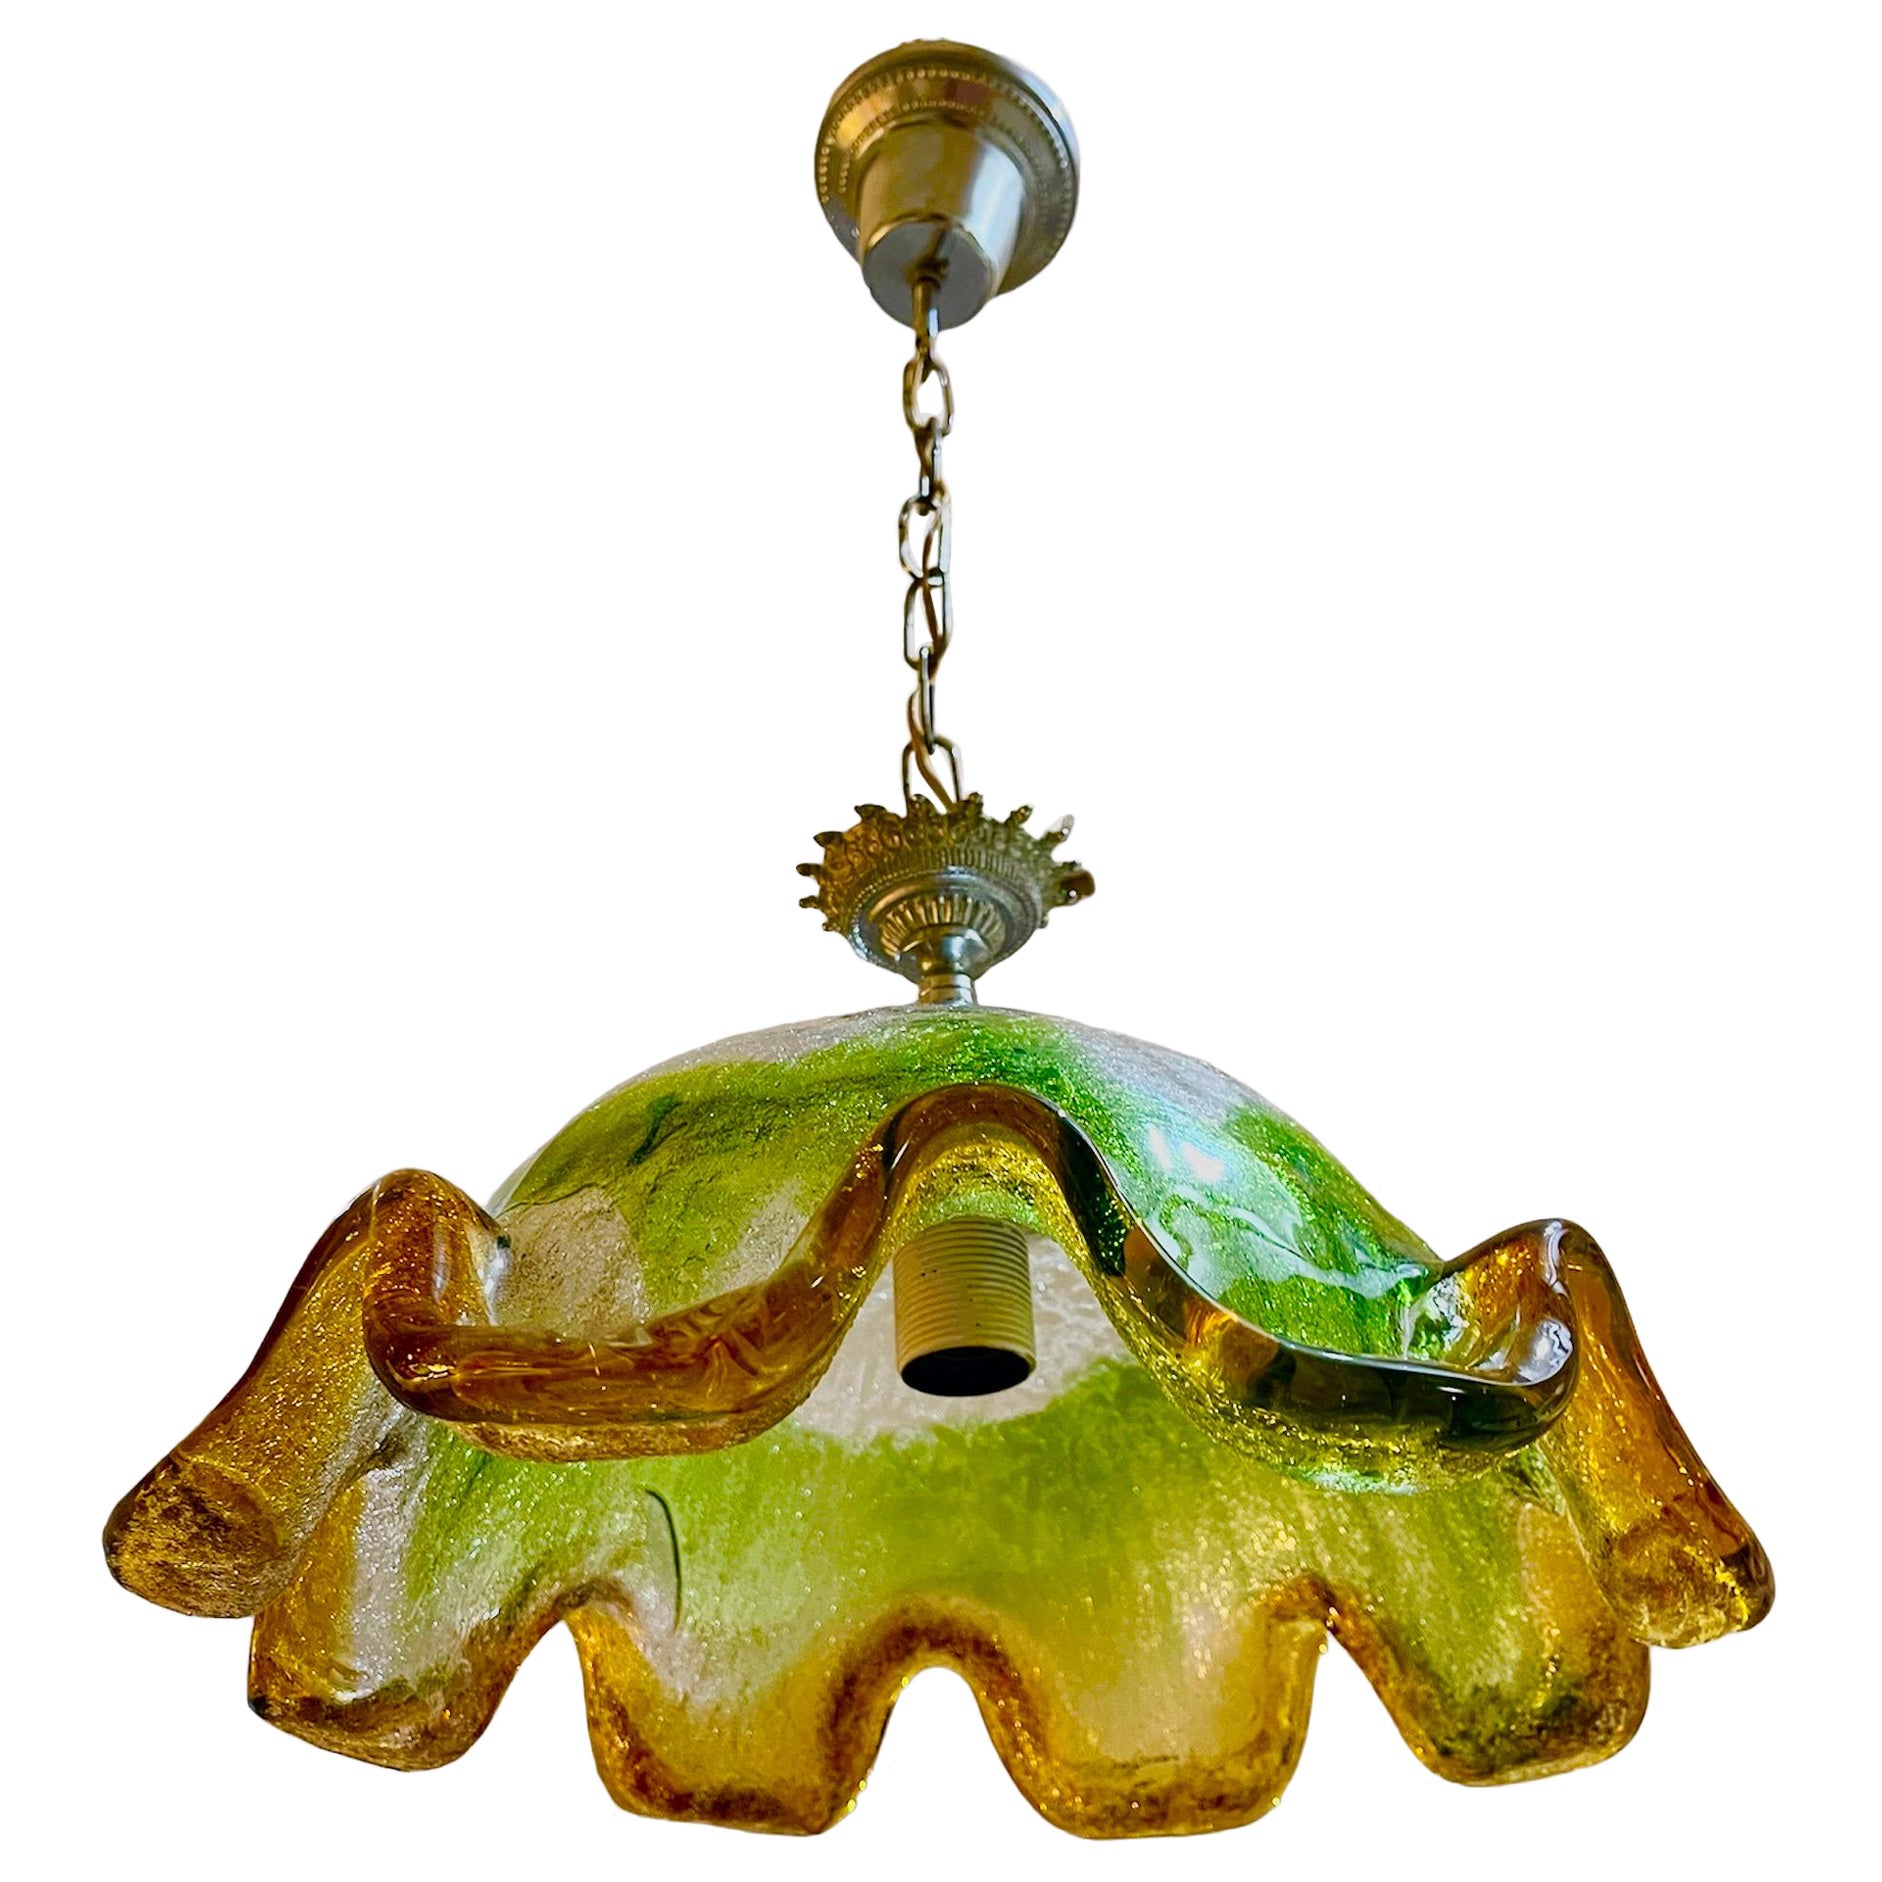 Mazzega Pendant with Glass Murano Bicolore, Italy, 1970